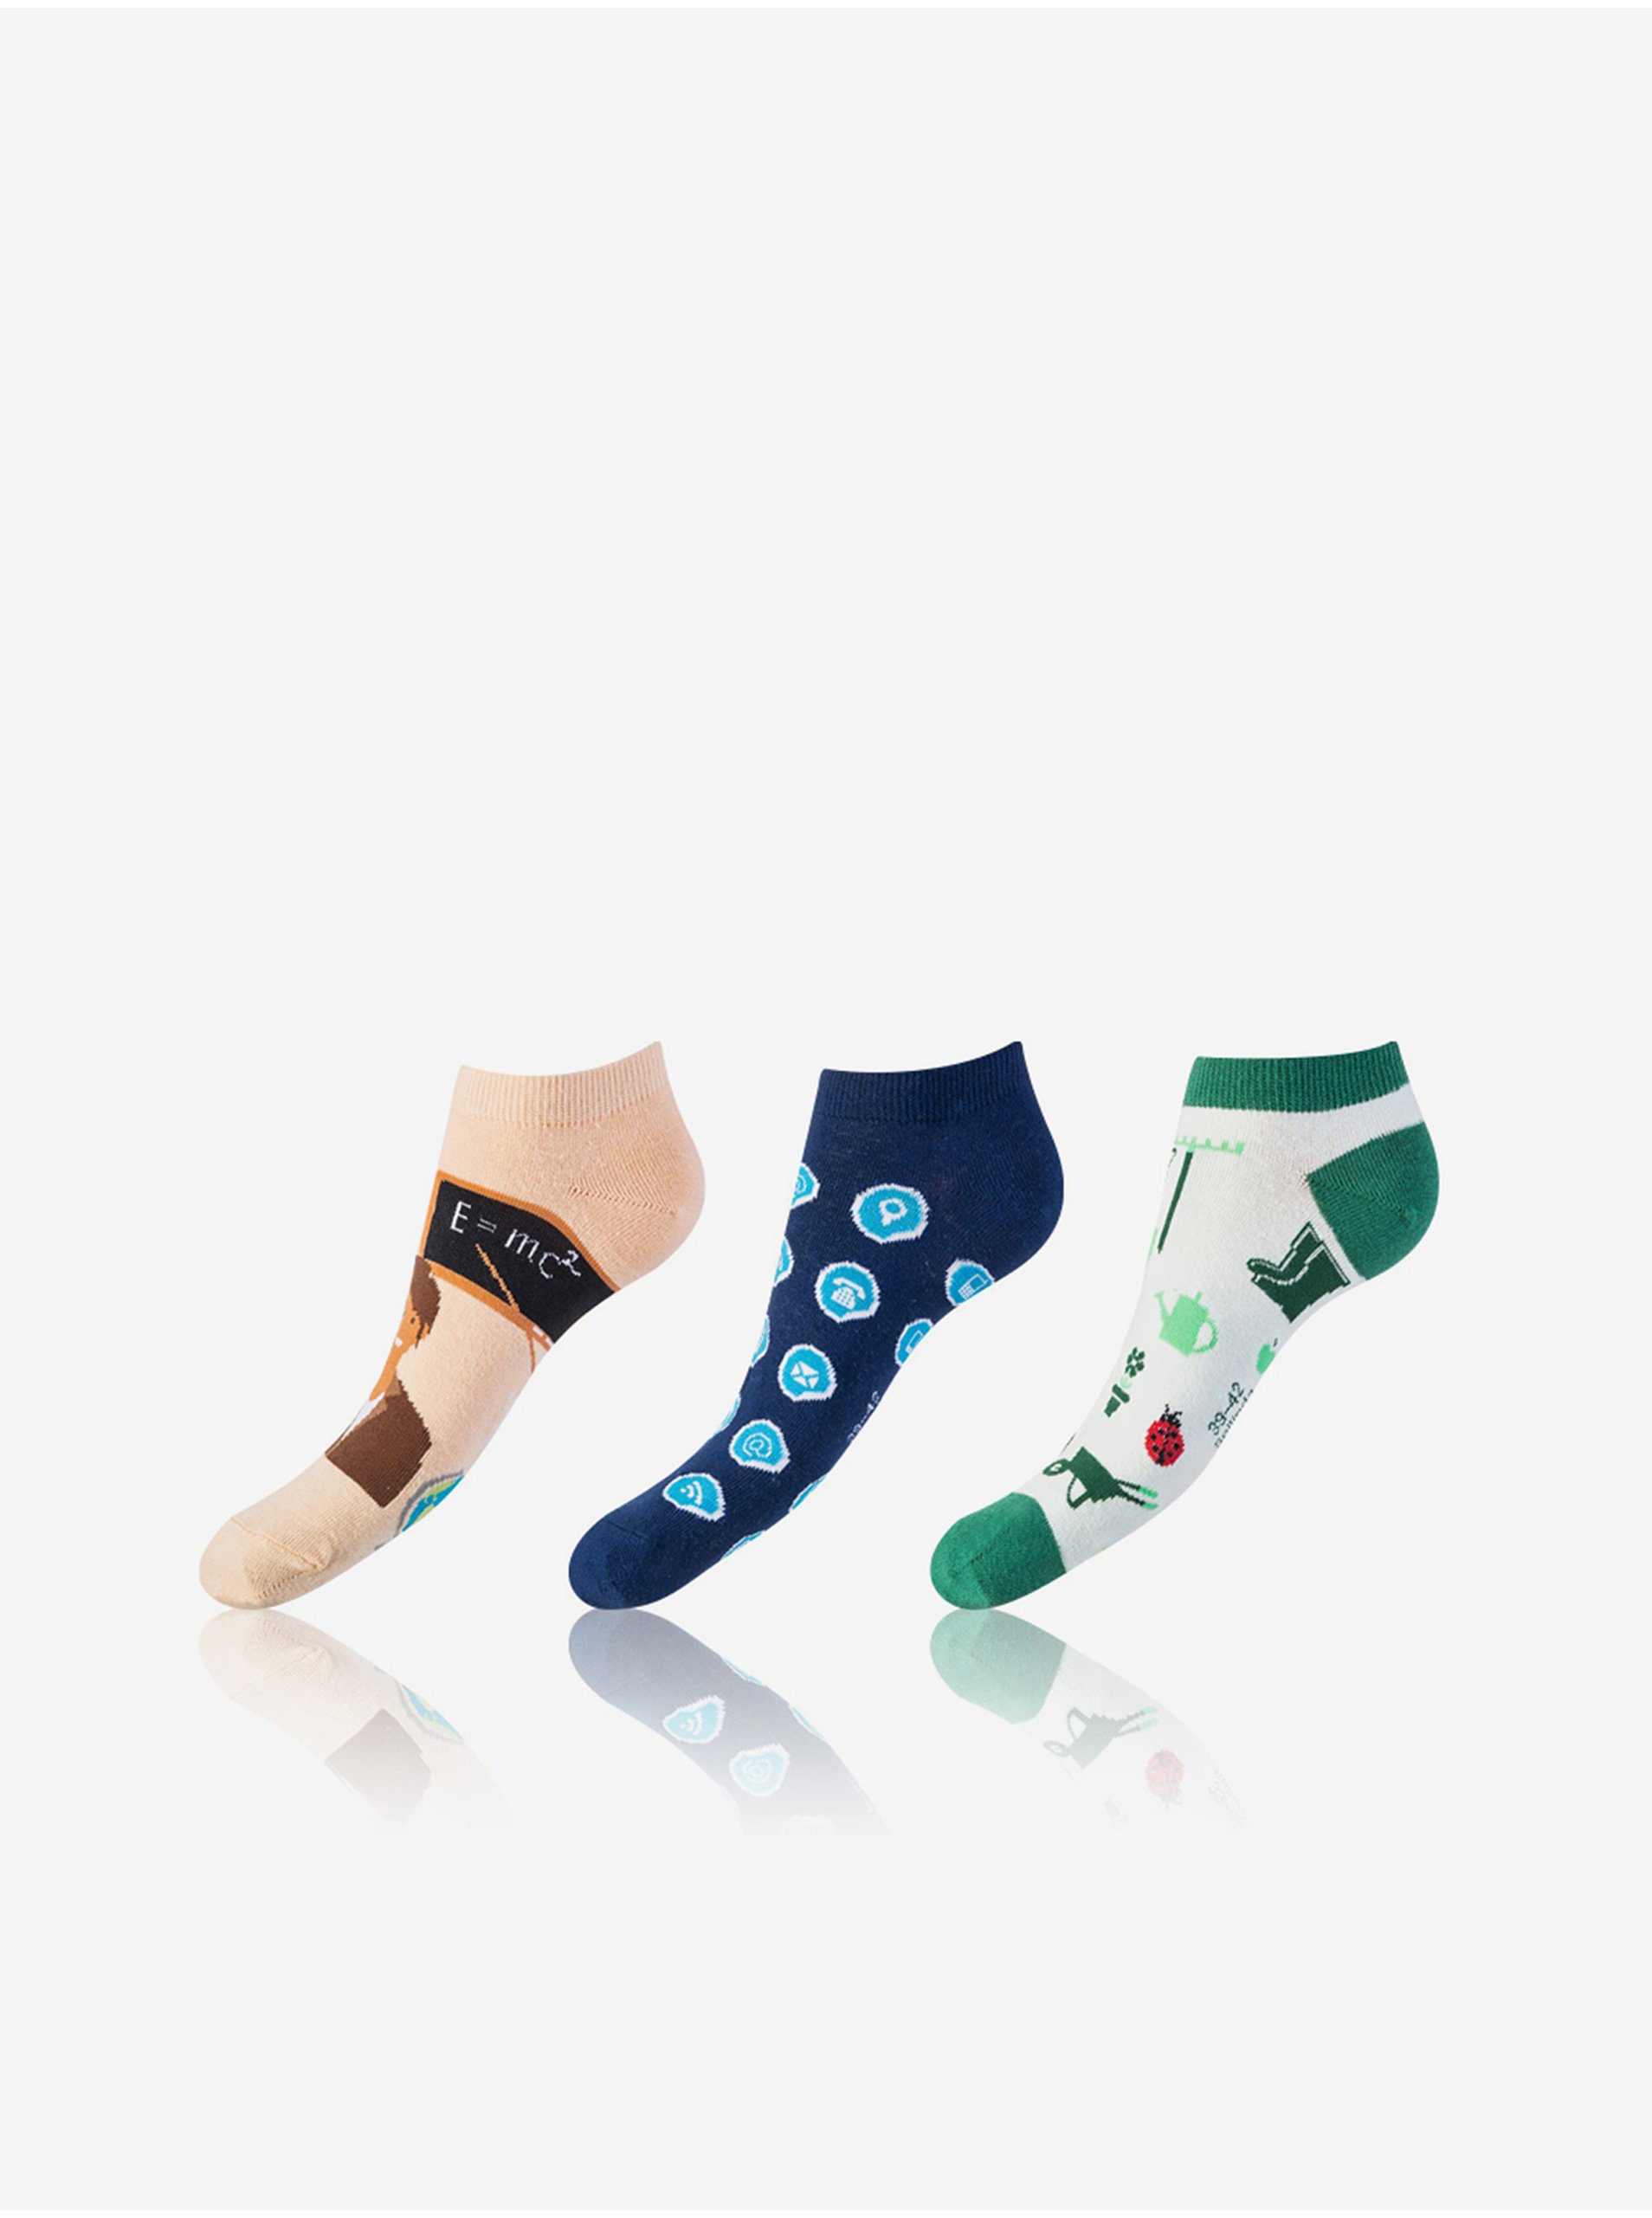 Levně Sada tří unisex vzorovaných ponožek v modré, zelené a světle růžové barvě Bellinda CRAZY IN-SHOE SOCKS 3x